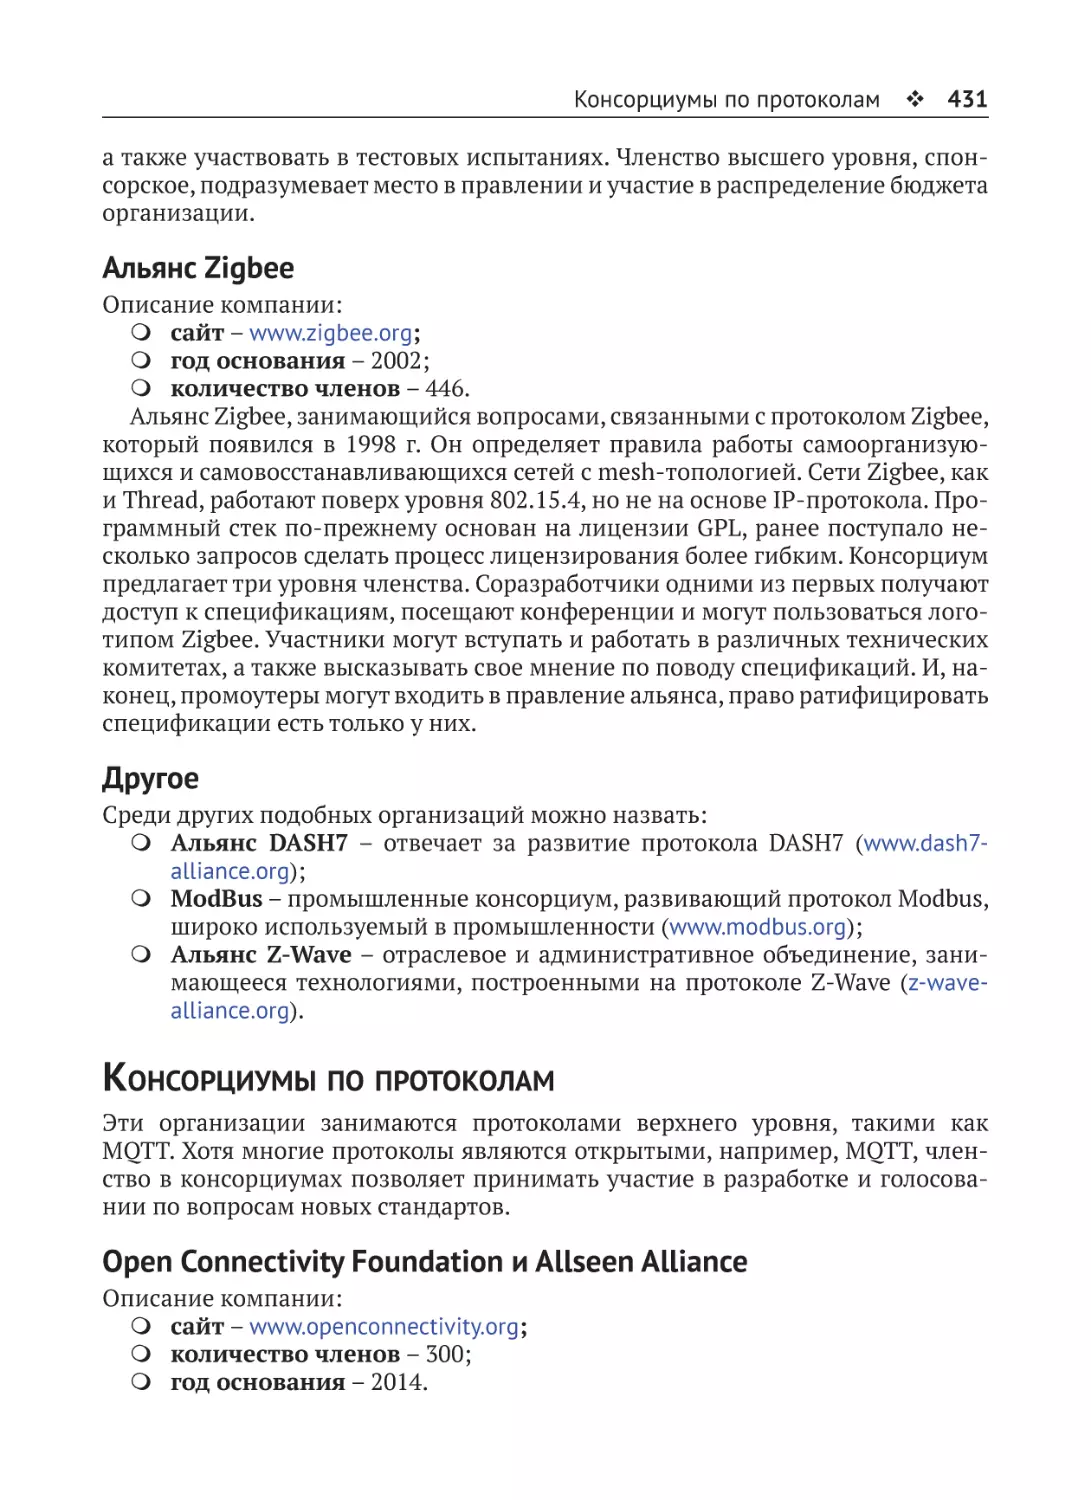 Альянс Zigbee
Другое
Консорциумы по протоколам
Open Connectivity Foundation и Allseen Alliance